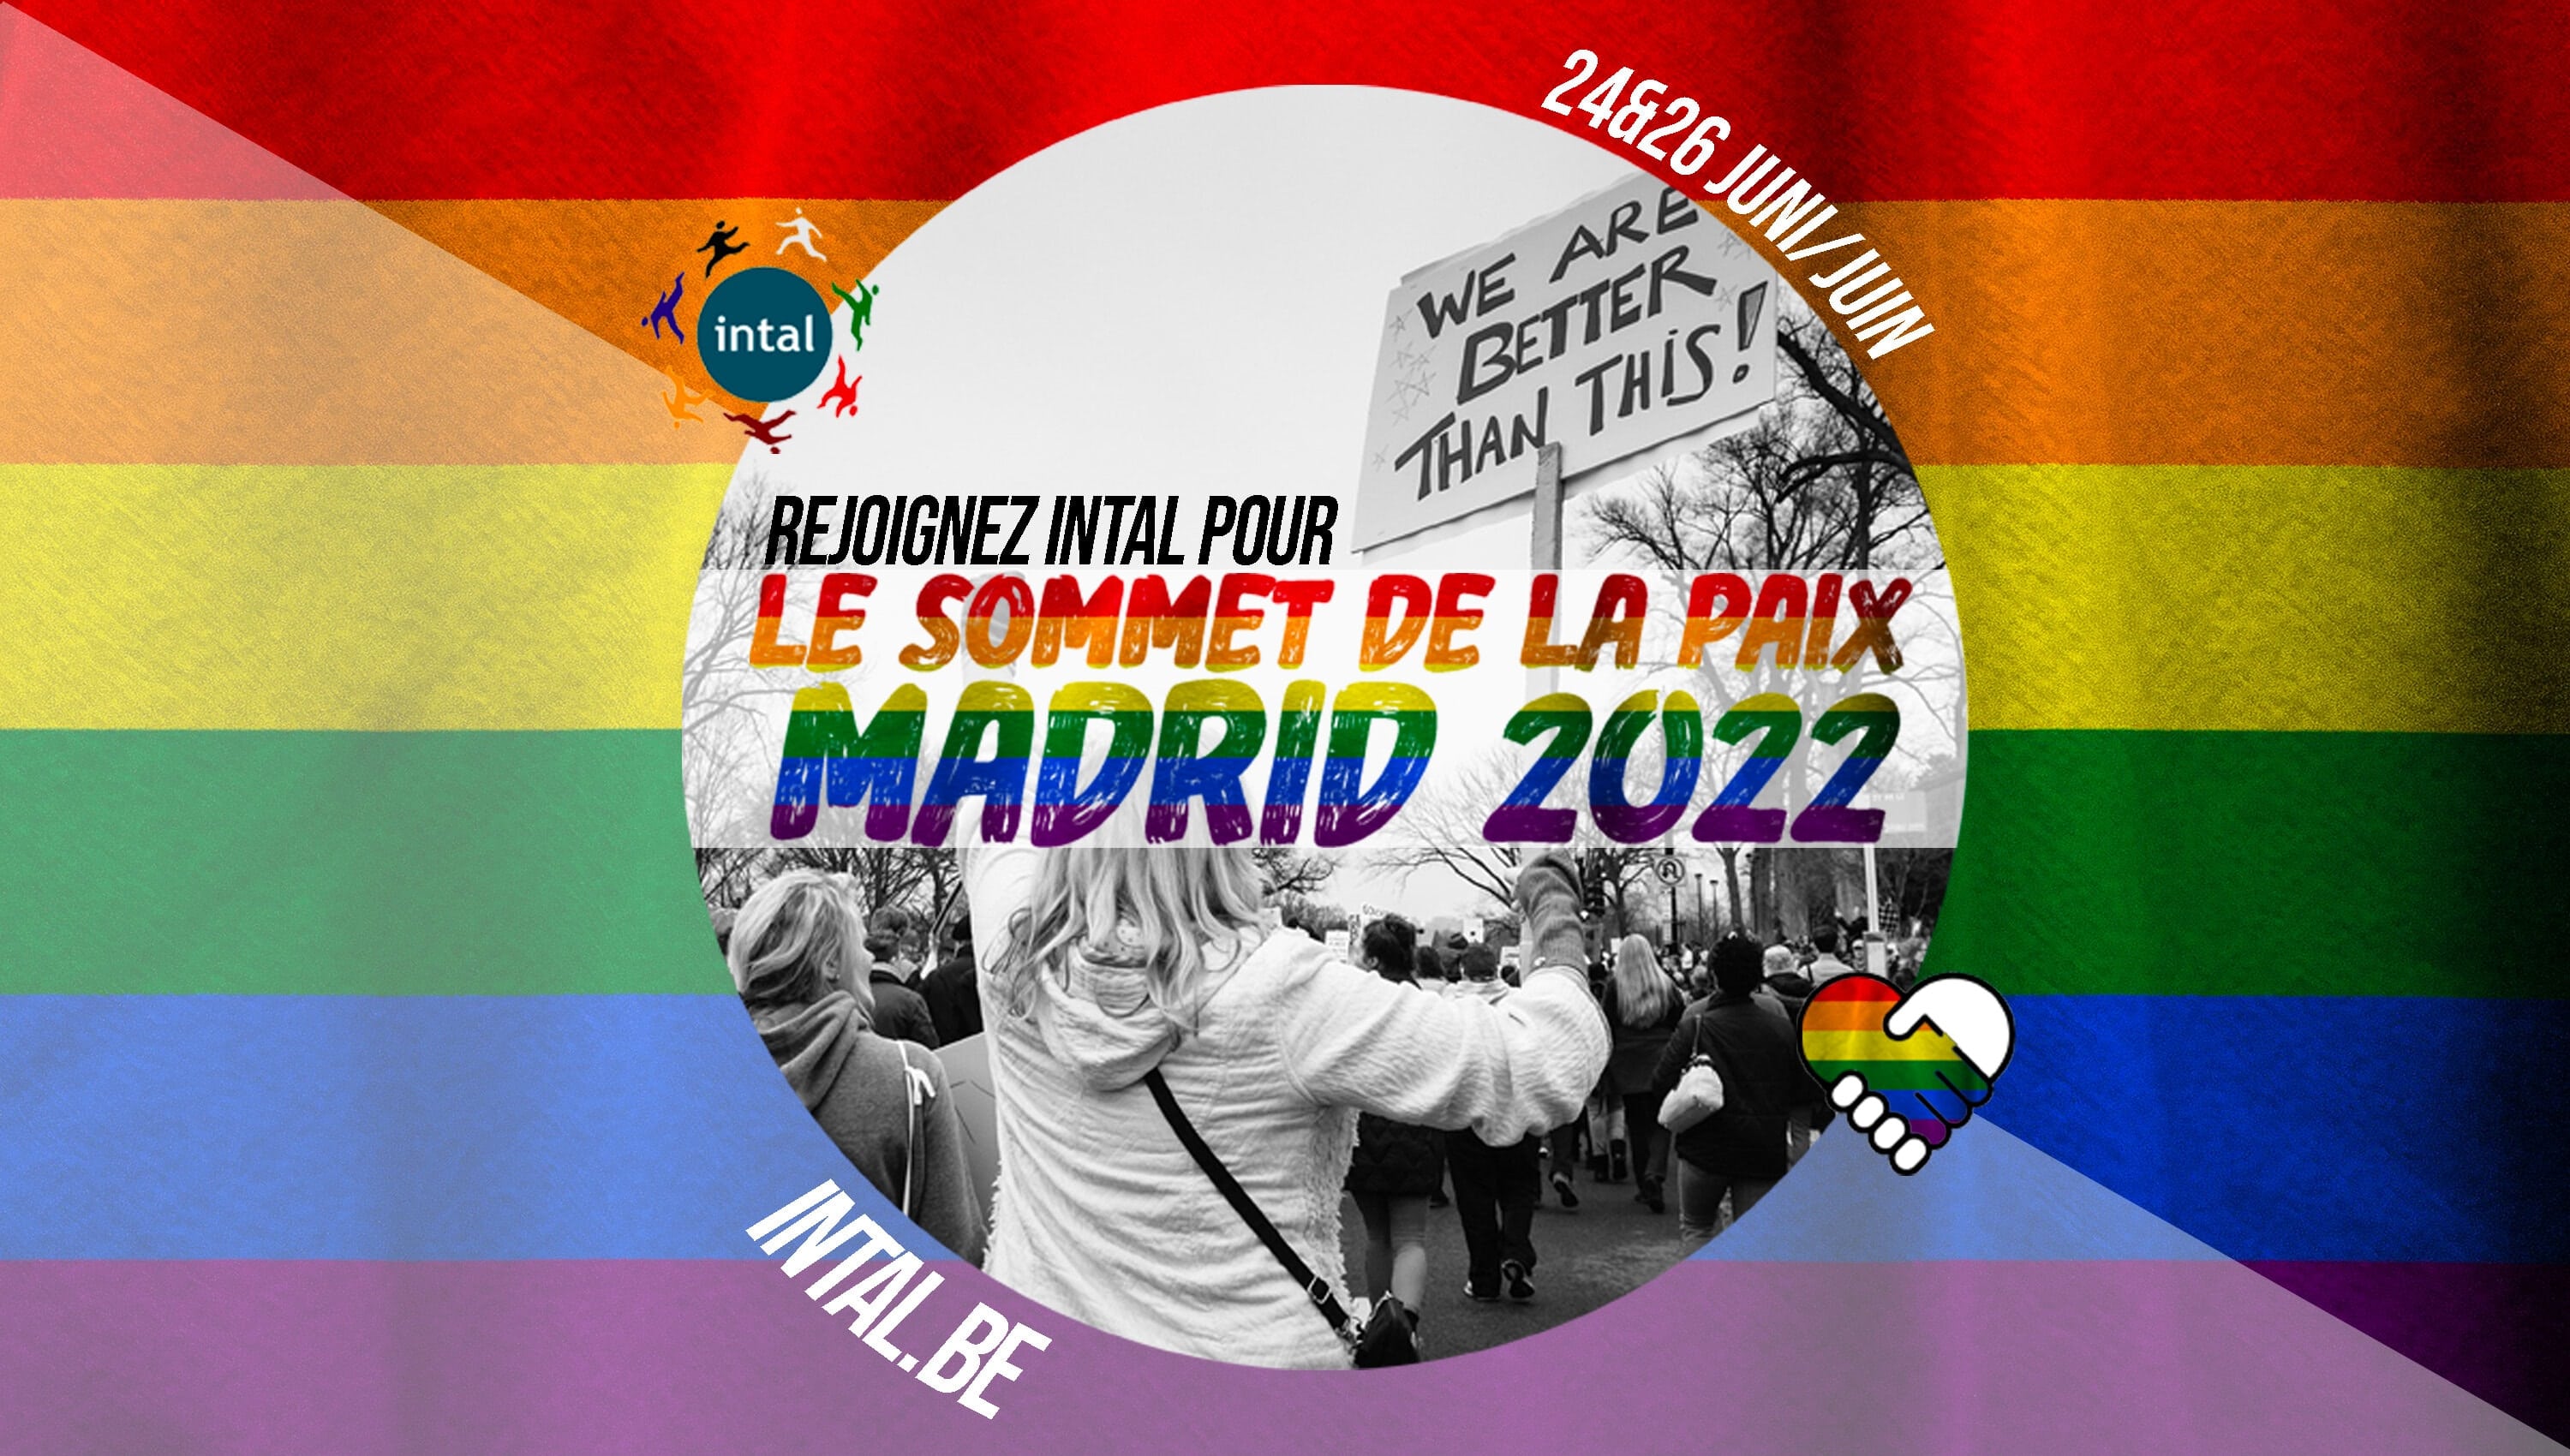 Rejoignez Intal au Sommet de la Paix de Madrid 2022